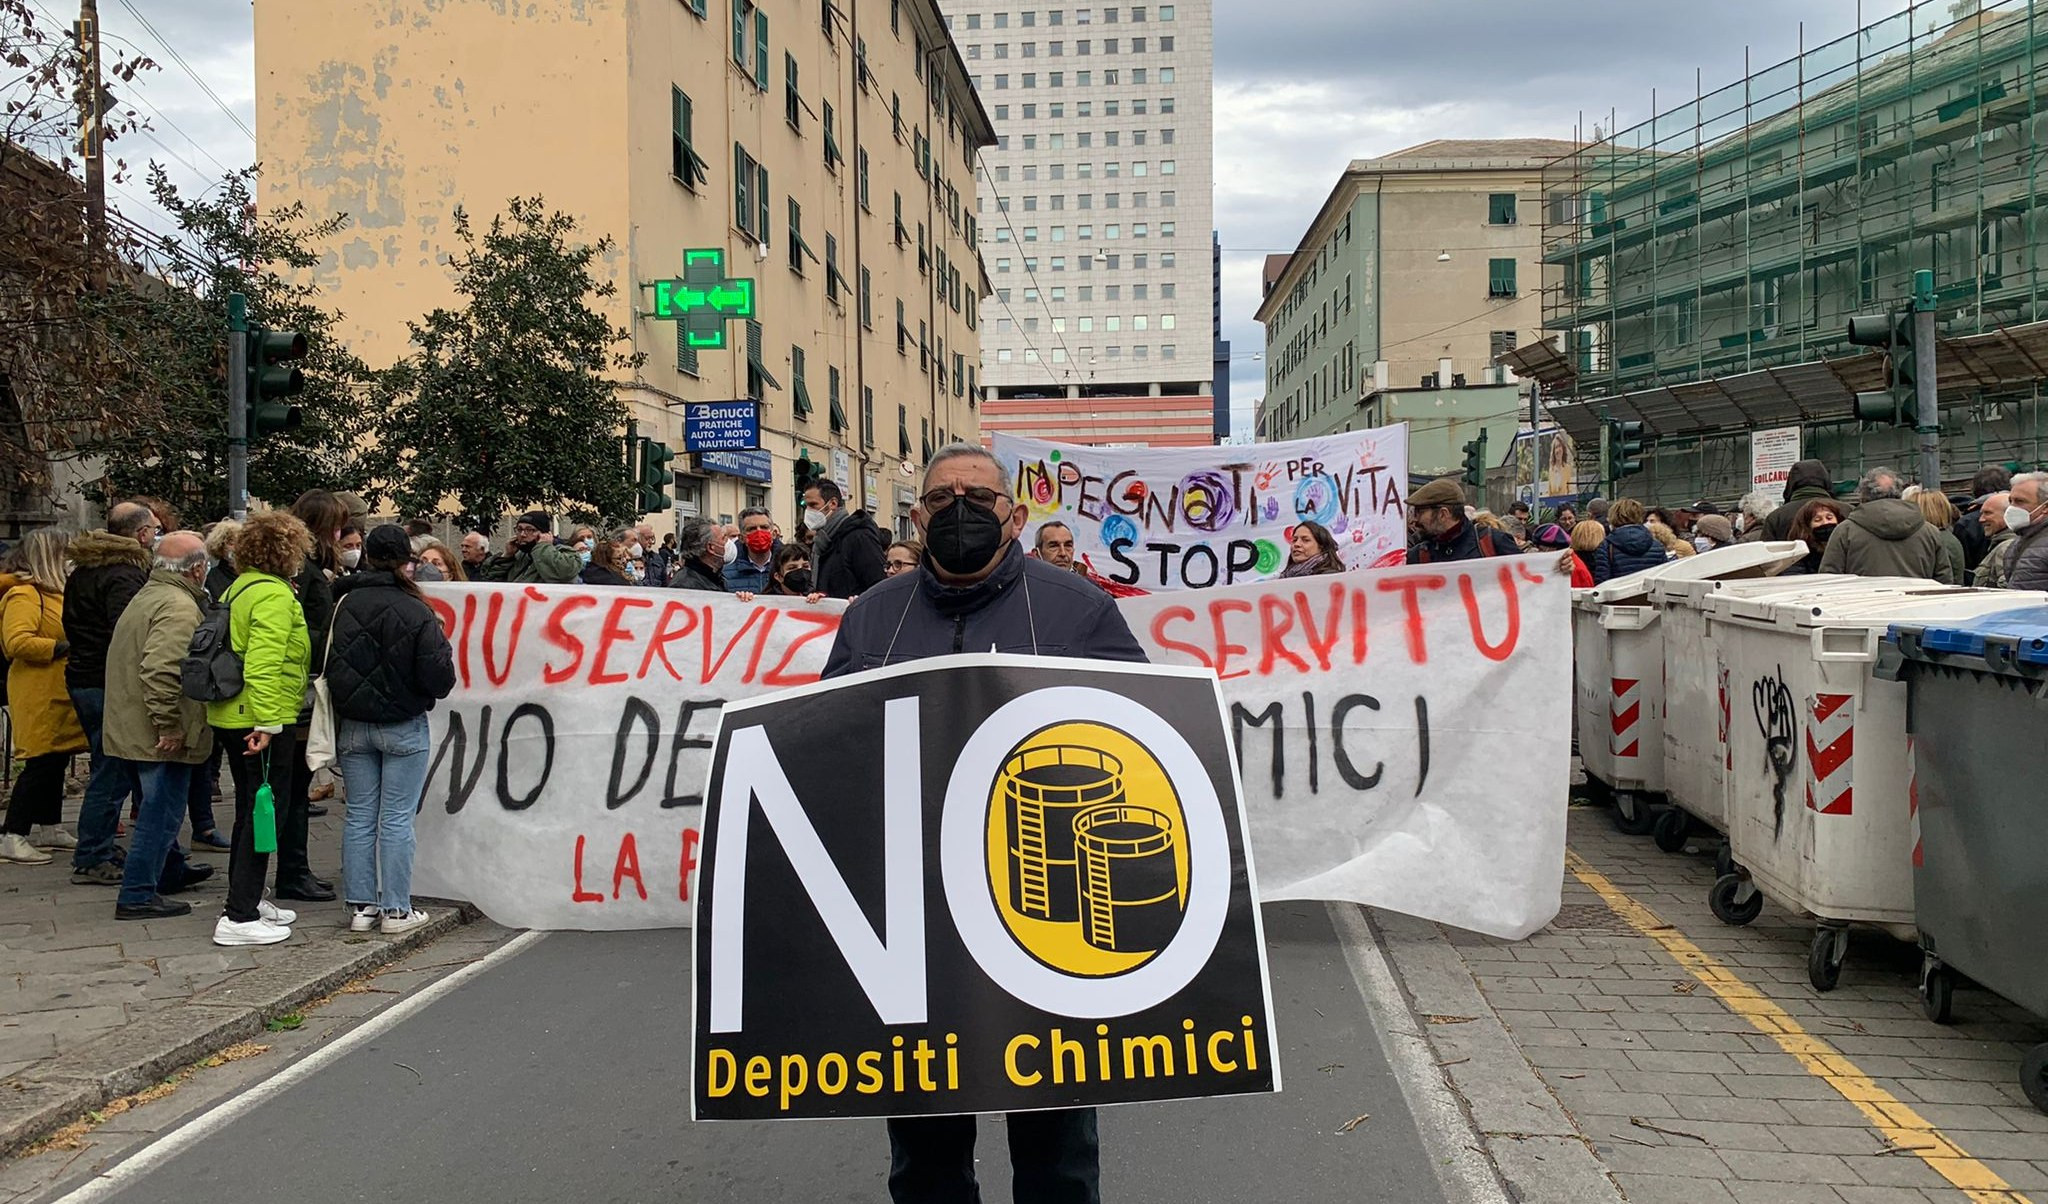 Depositi chimici, a Sampierdarena ancora in piazza per dire no. Tra poco l'audizione alla Camera